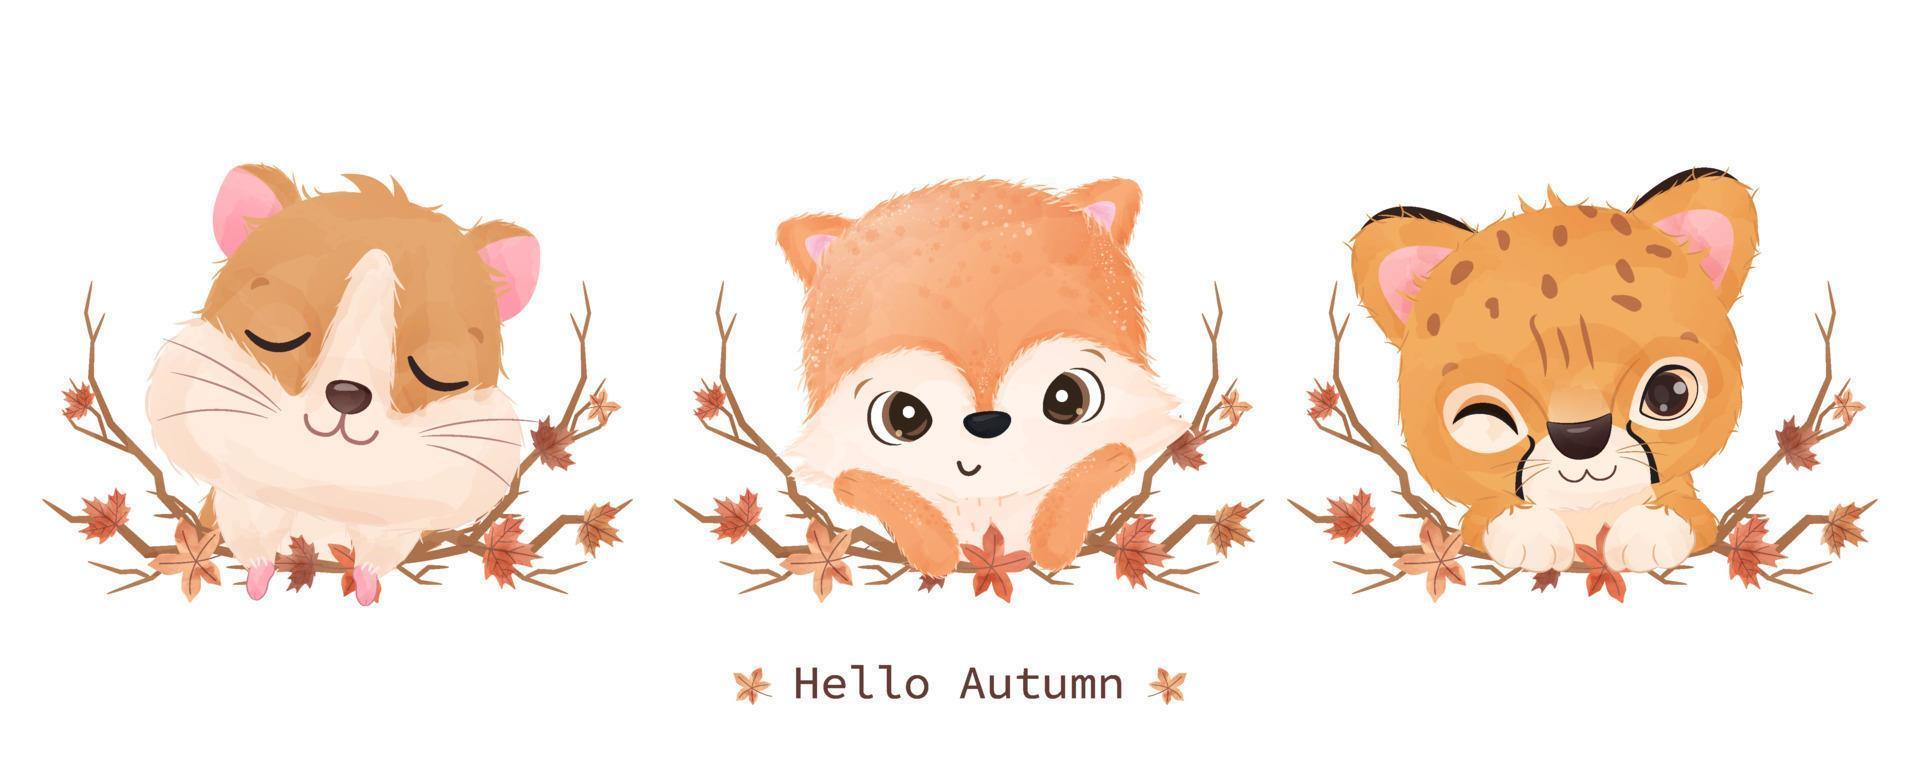 linda ilustración de animalitos para decoración de otoño vector